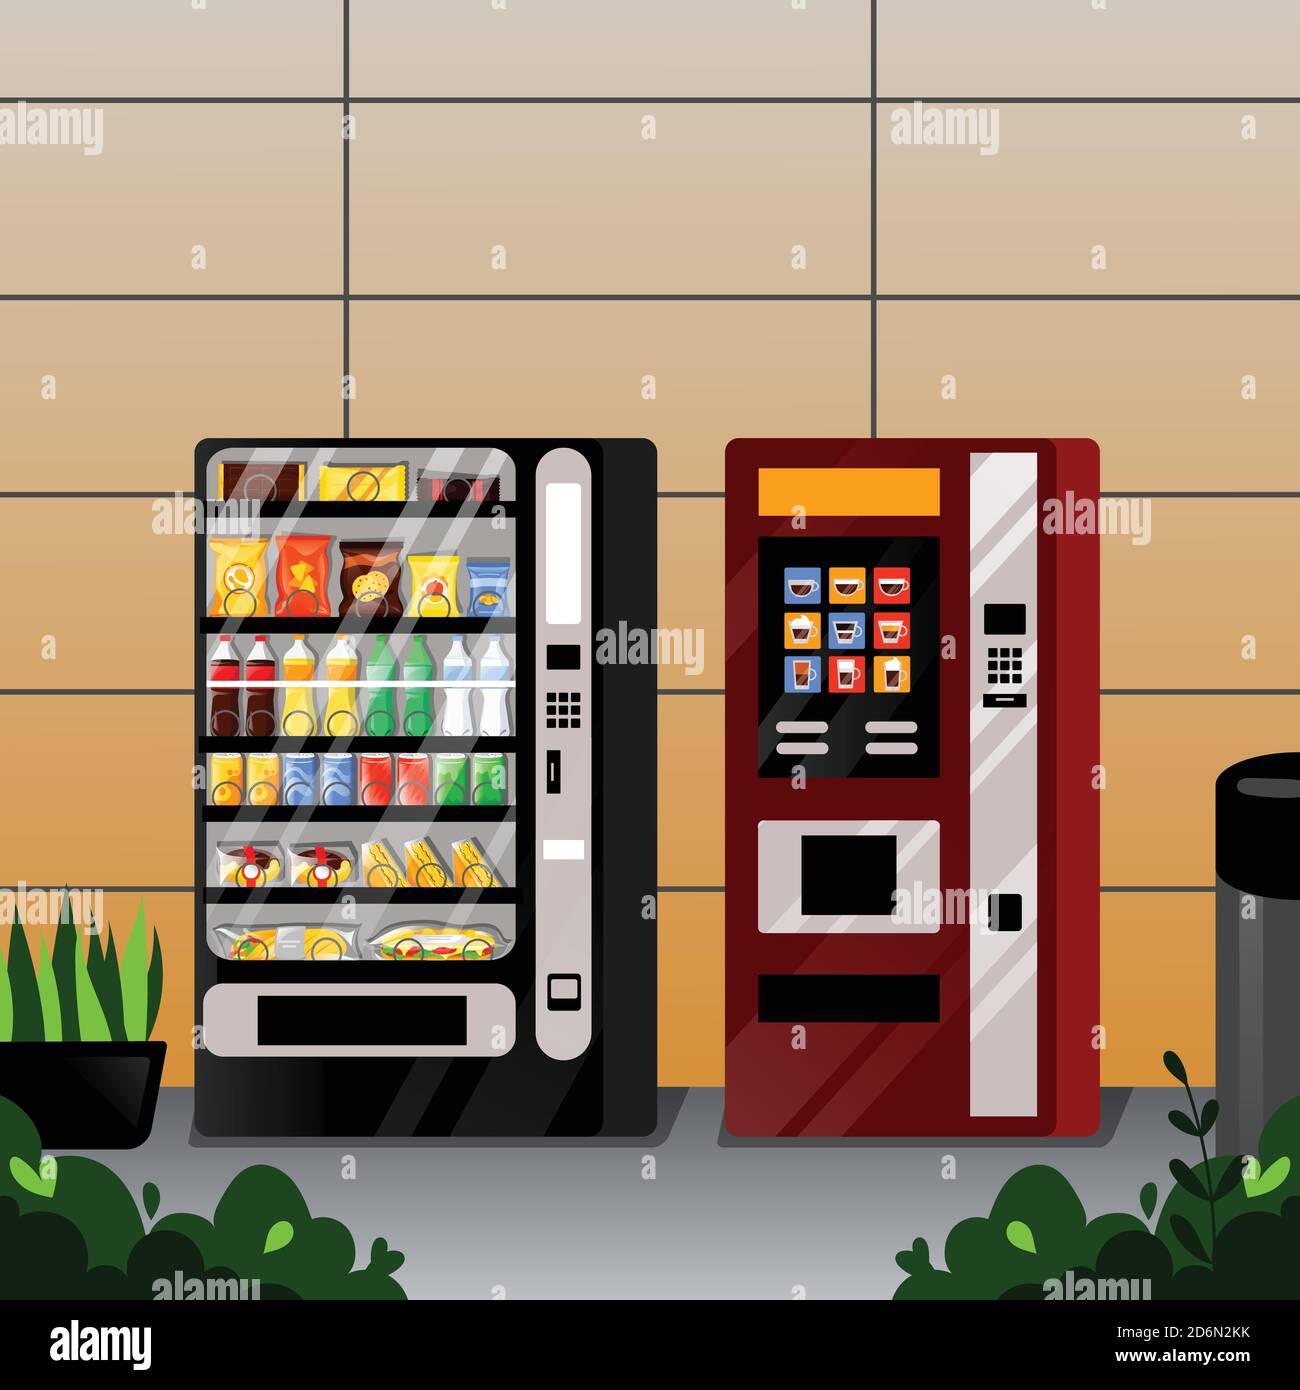 Distributori automatici di snack, acqua e caffè. Illustrazione di un fumetto piatto Vetor. Servizio di vendita di cibo di strada. Illustrazione Vettoriale